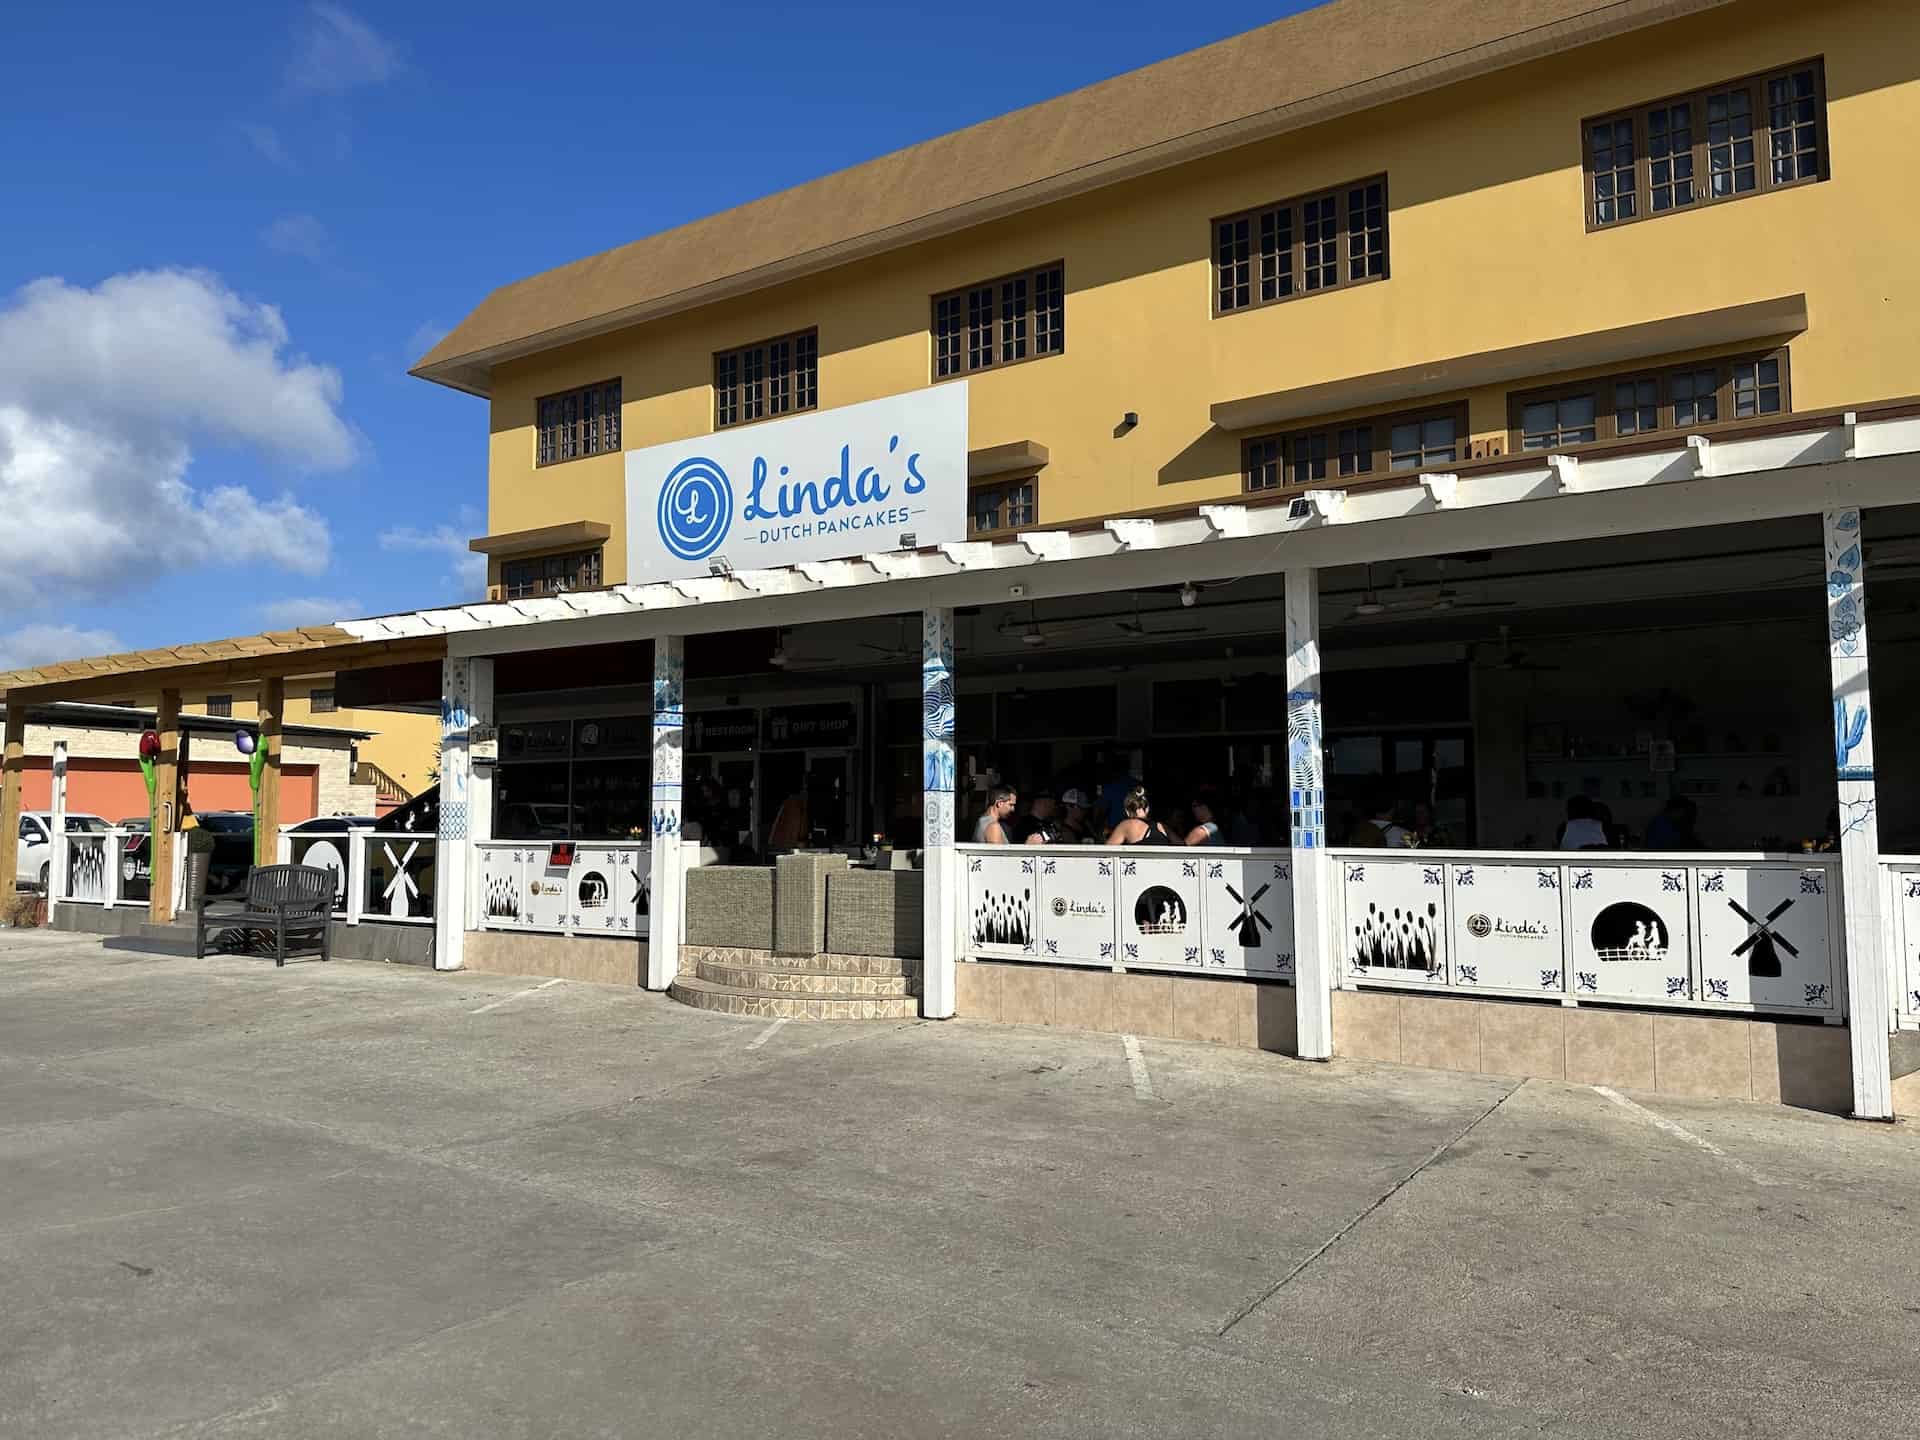 Linda's Dutch Pancakes in Palm Beach, Noord, Aruba